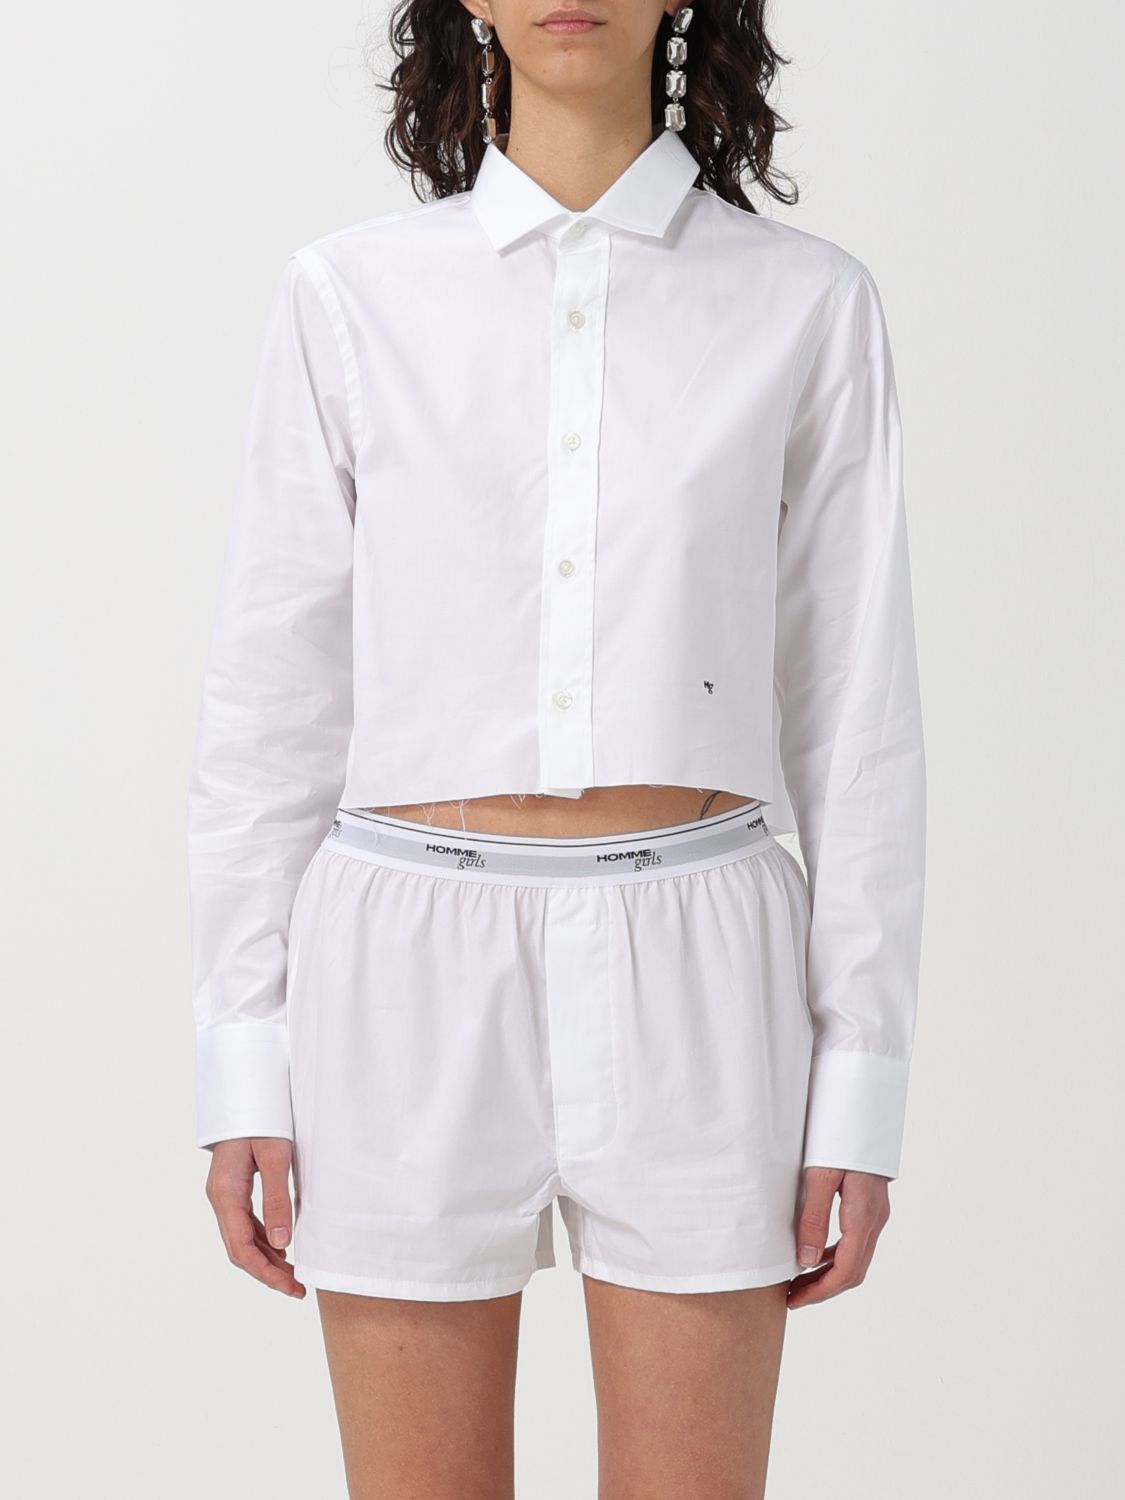 Hommegirls Women's Original Cropped Shirt In White